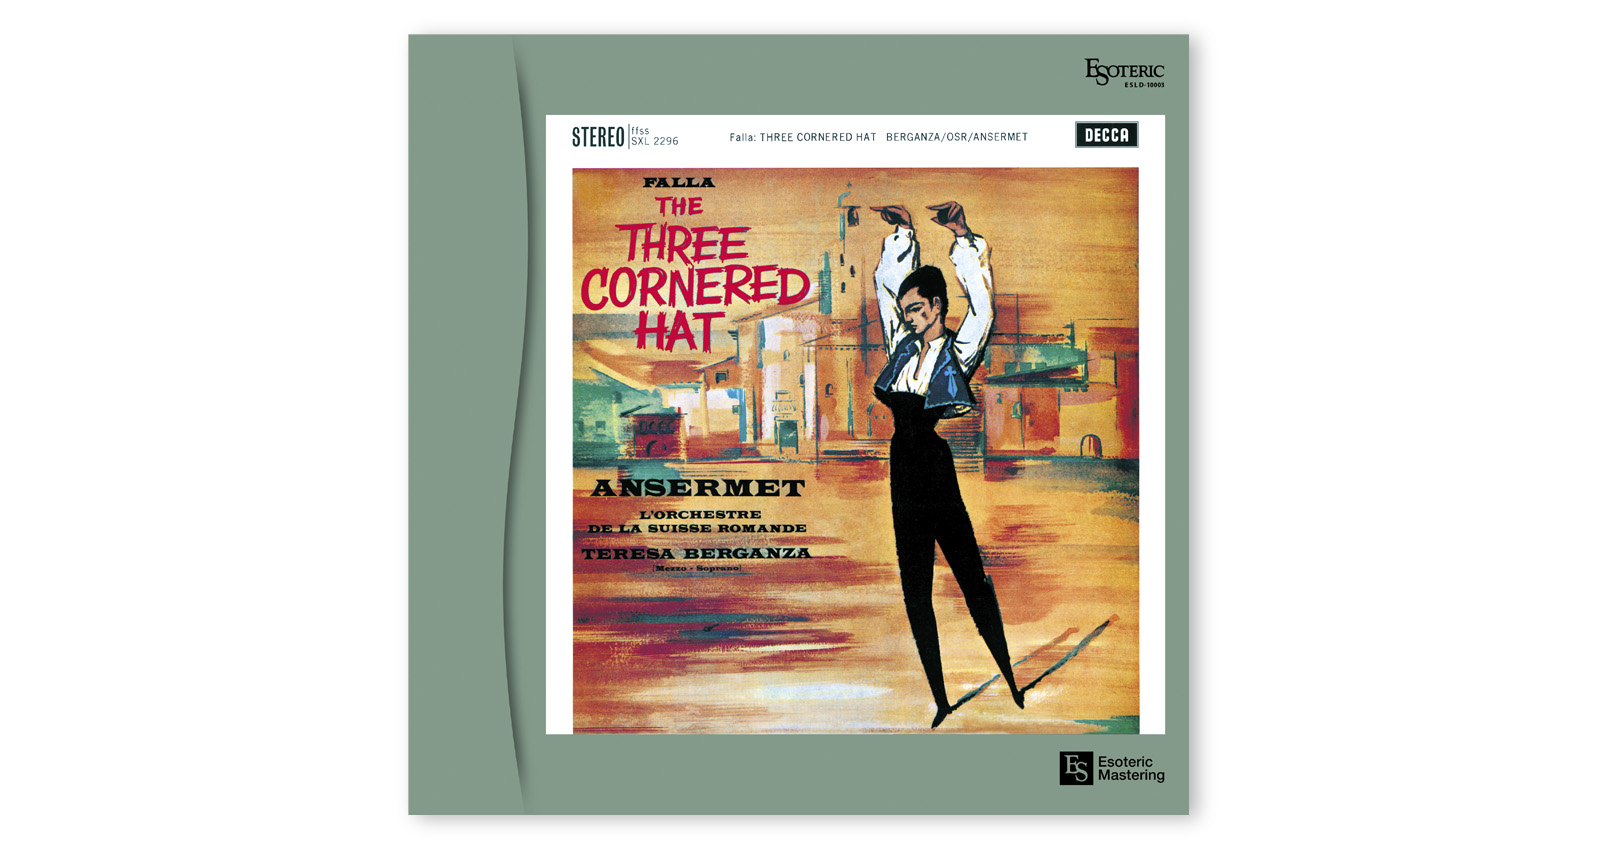 Manuel De Falla: The Three Cornered Hat, Teresa Berganza/Ernest Ansermet/L'Orchestre De La Suisse Romande - LP 180g Vinyl, Limited, Remastered